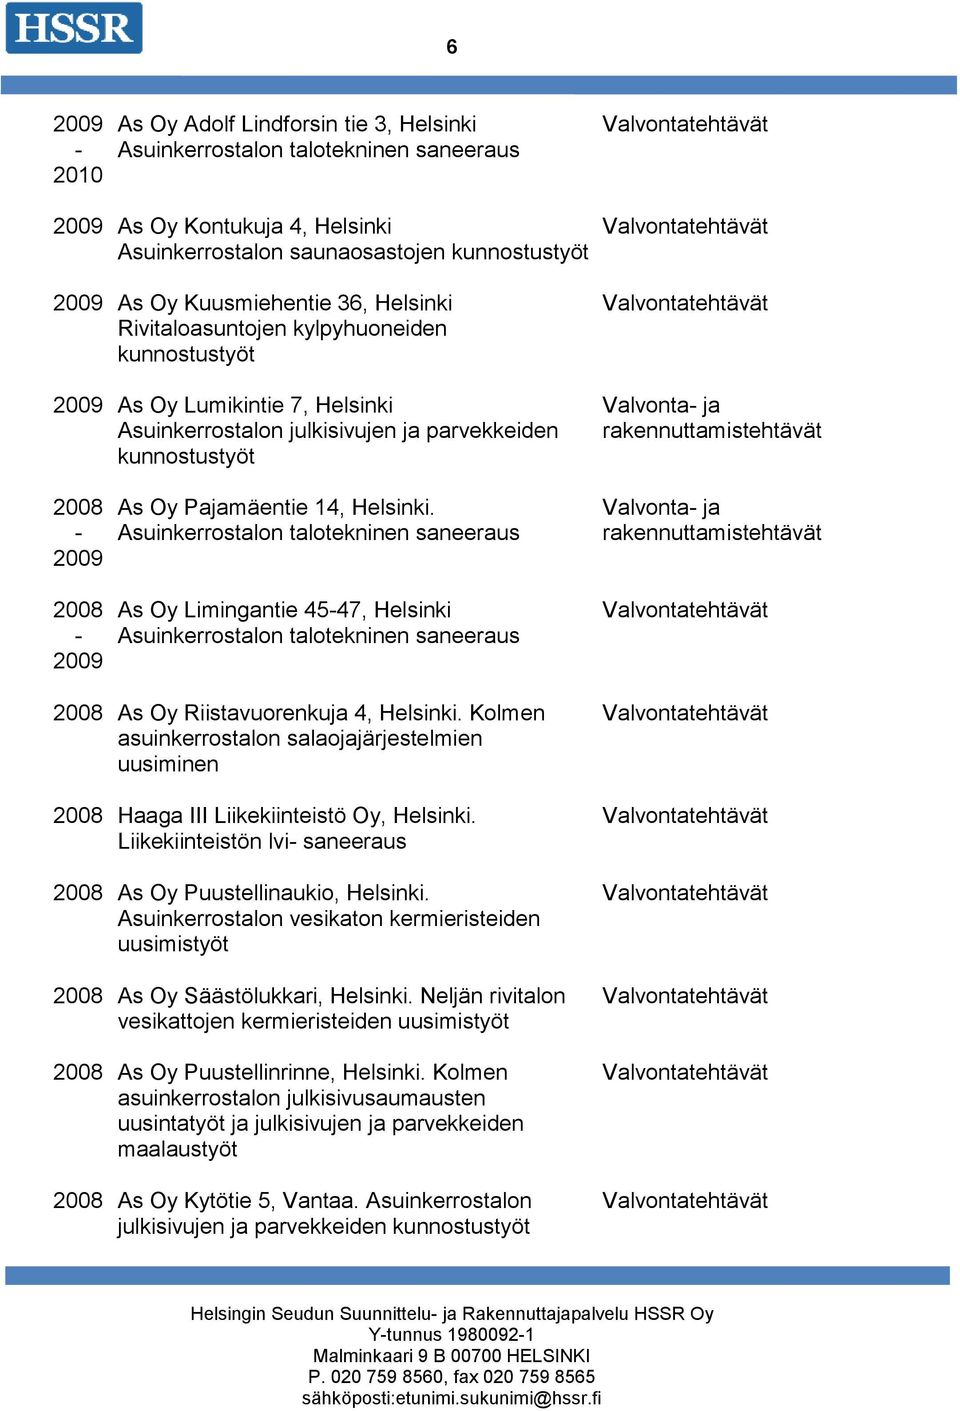 Kolmen asuinkerrostalon salaojajärjestelmien 2008 Haaga III Liikekiinteistö Oy, Helsinki. Liikekiinteistön lvi saneeraus 2008 As Oy Puustellinaukio, Helsinki.